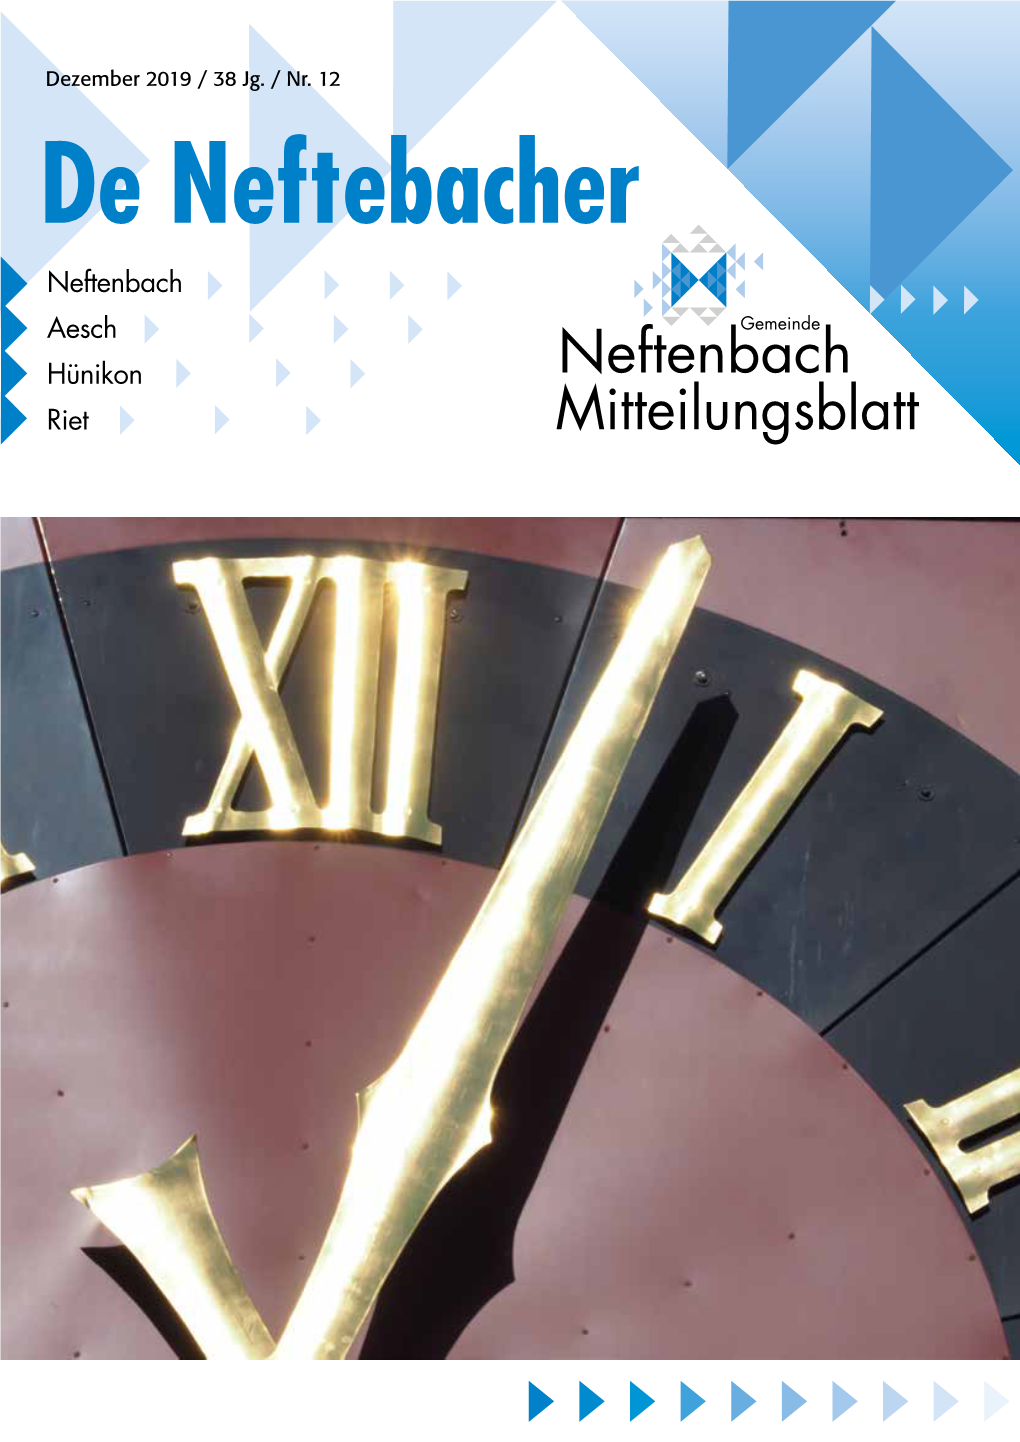 De Neftebacher Neftenbach Aesch Hünikon Neftenbach Riet Mitteilungsblatt 2 De Neftebacher Informationen Aus Behörden Und Verwaltung